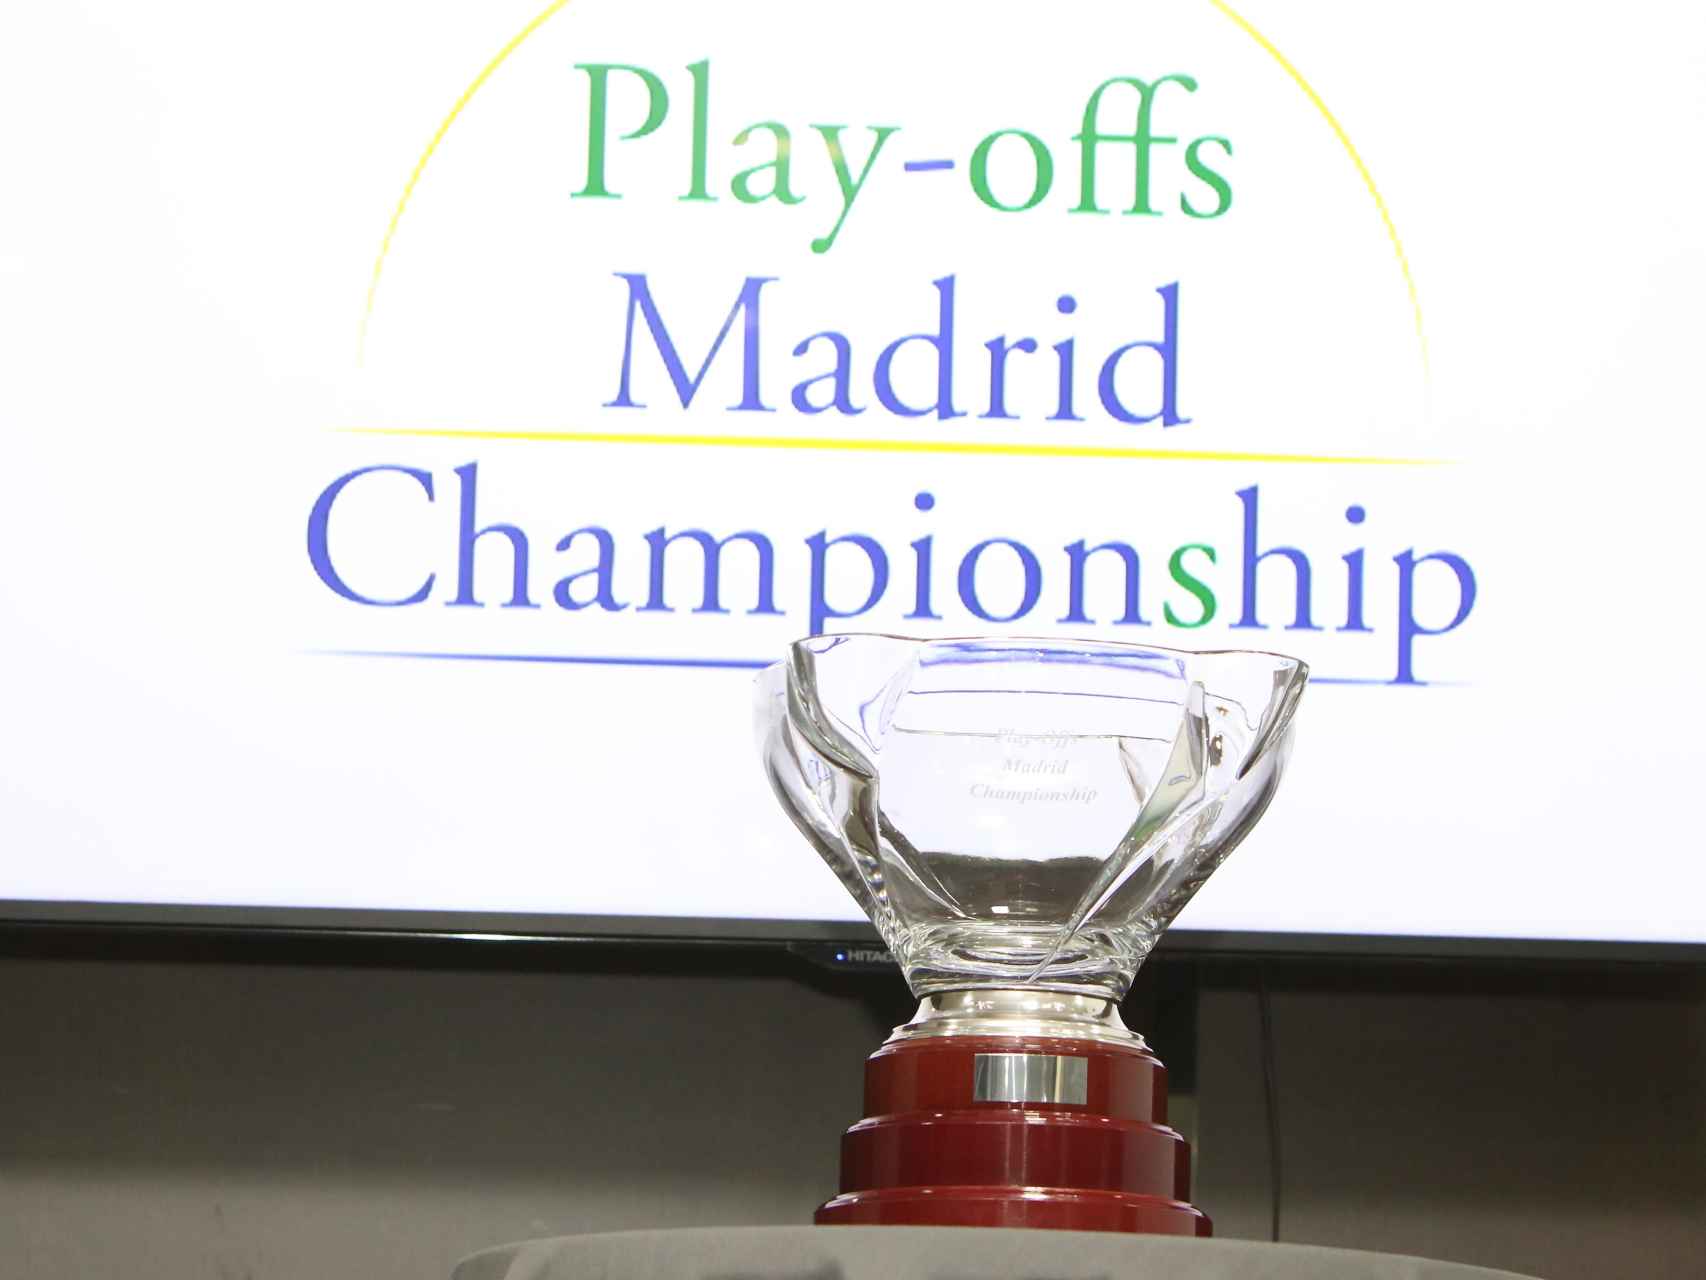 El trofeo de los Playoffs Madrid Championship.